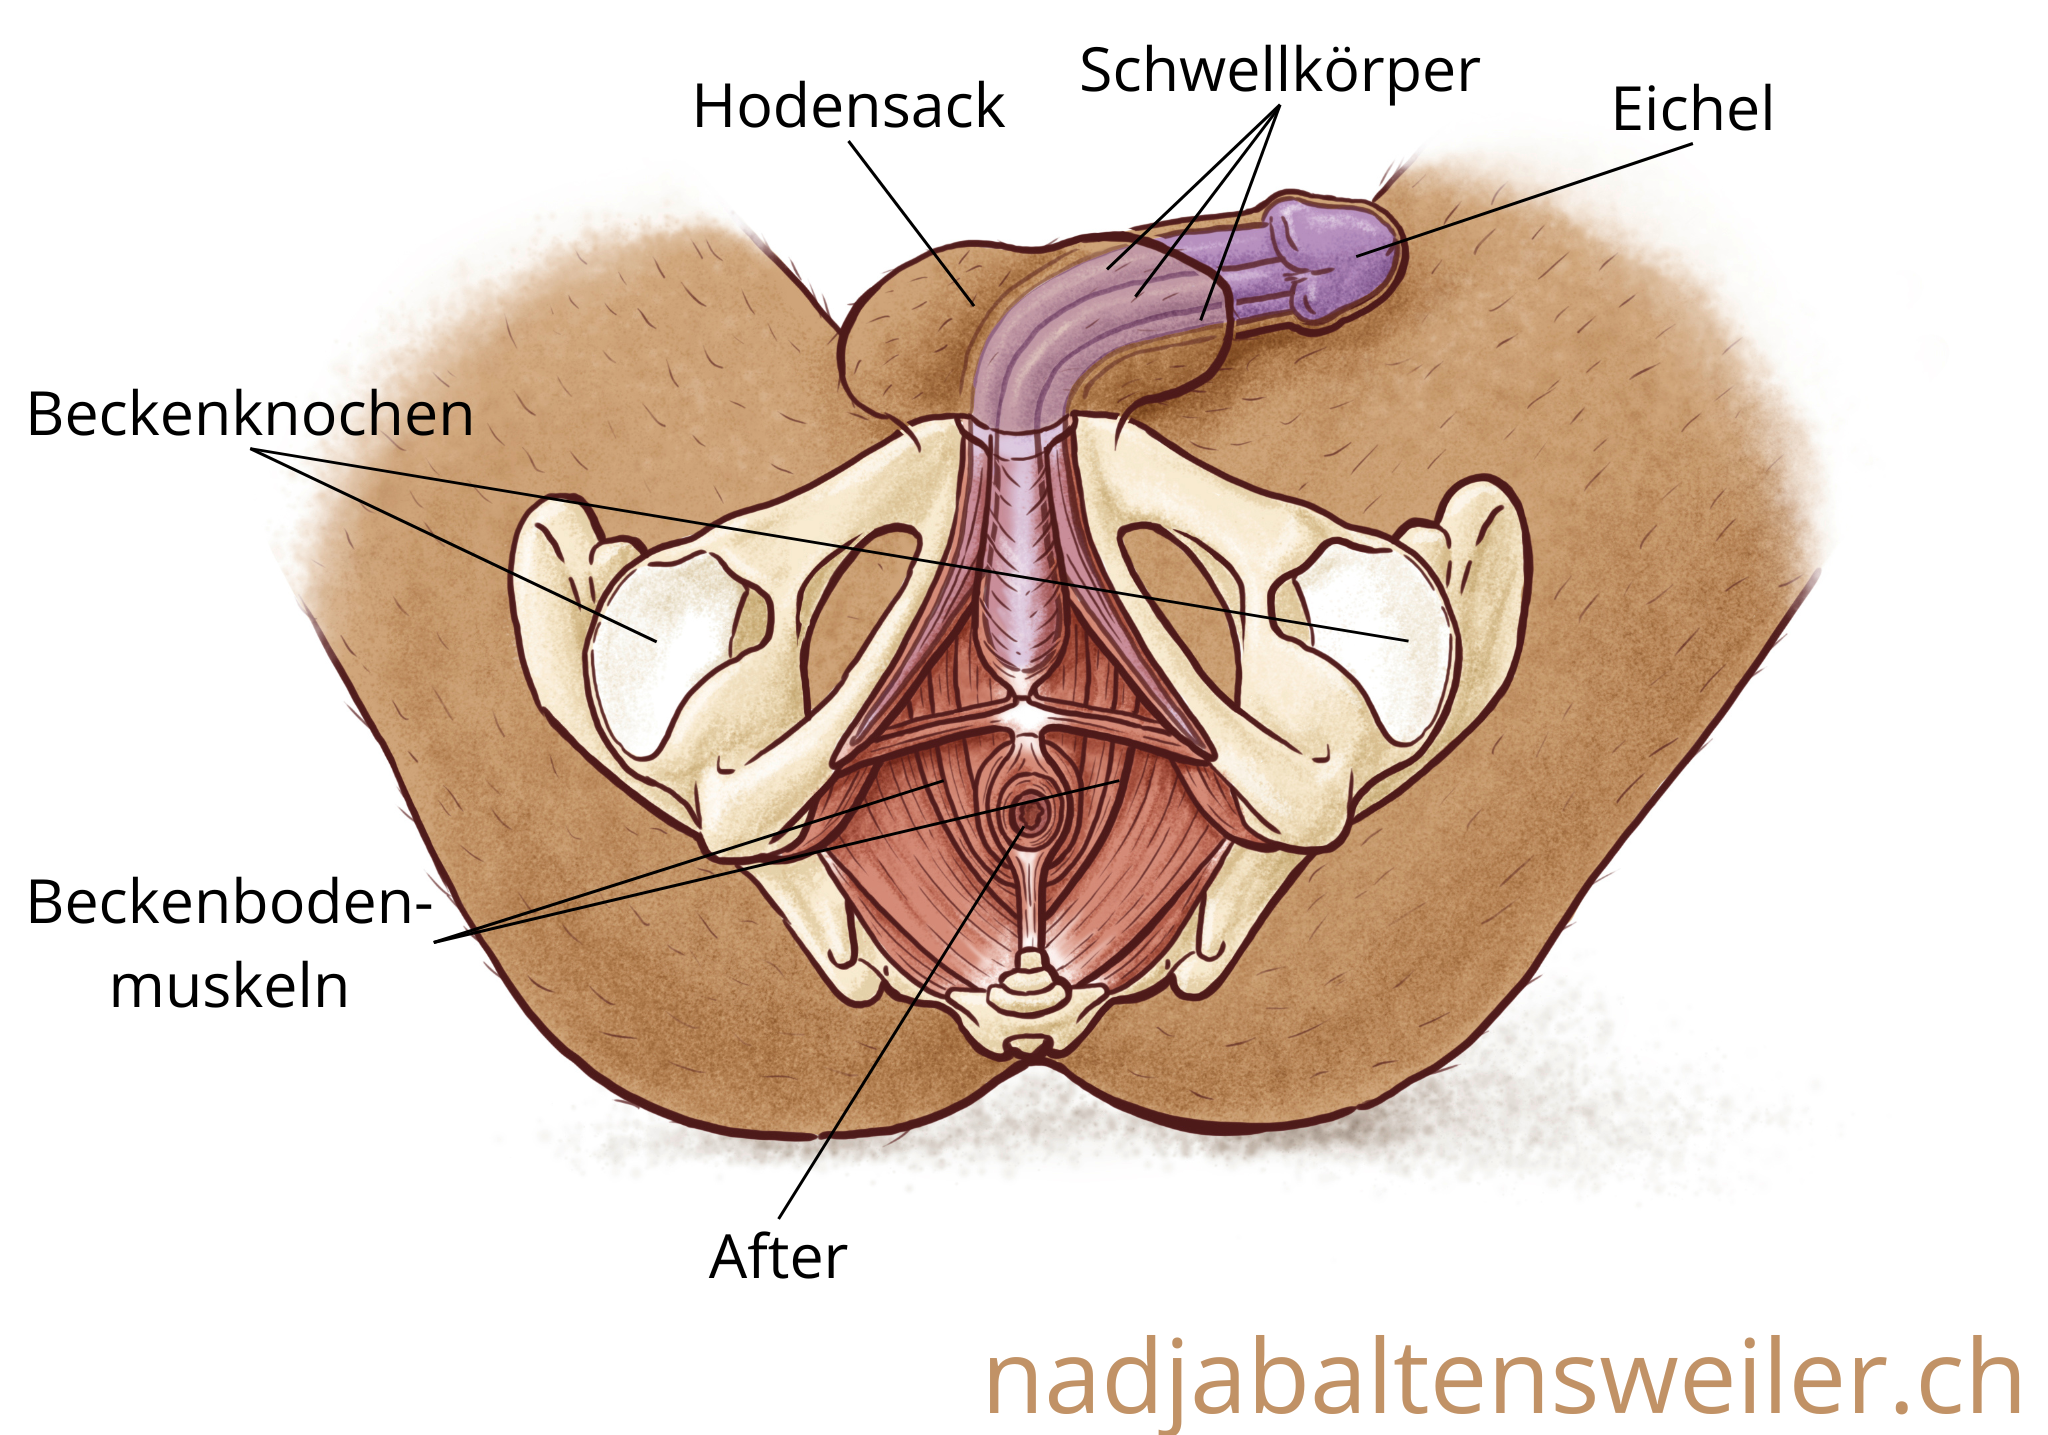 Schematische Darstellung einer Person mit Penis von unten. Zu sehen sind die Beckenknochen, die die Beckenbodenmuskeln umgeben. In der Mitte liegt der After. Über dem After beginnen die Schwellkörper. Sie reichen bis zur Eichel in den Penis hinein. Unten am Penis liegt der Hodensack.